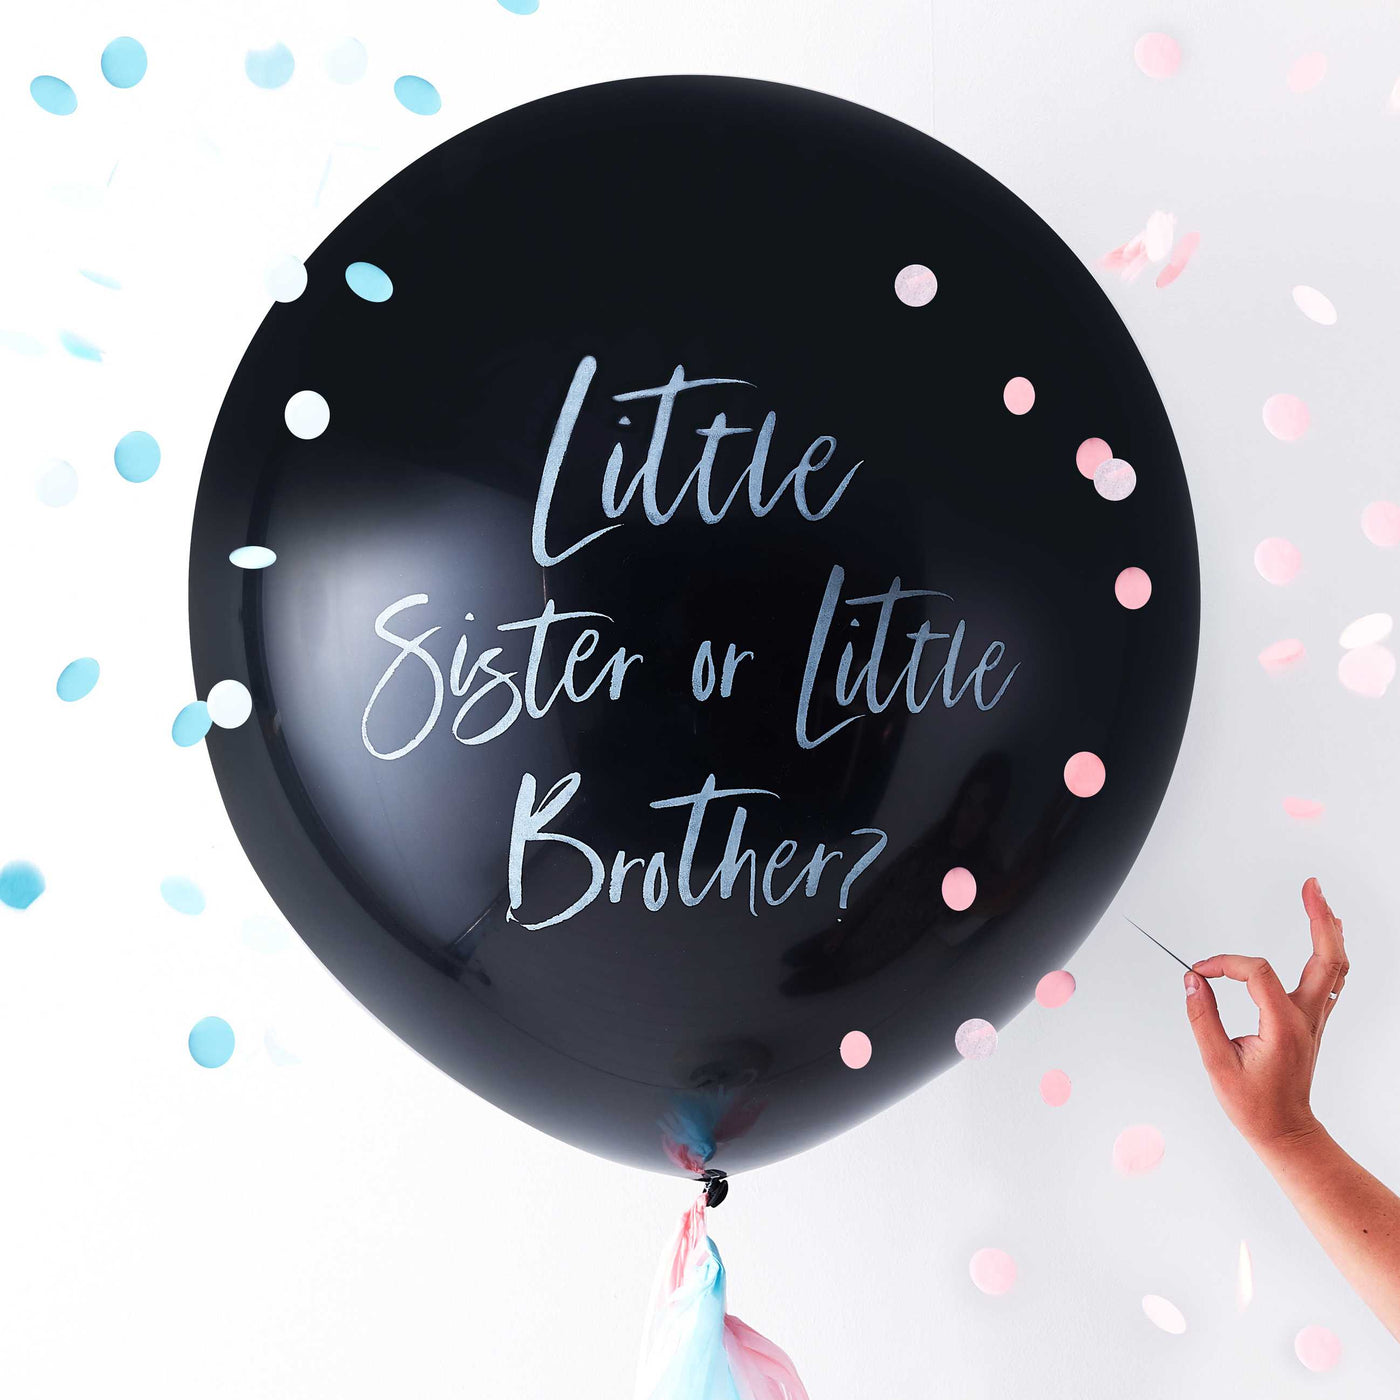 L Balão Revelar Irmã Irmão impresso inflado com hélio